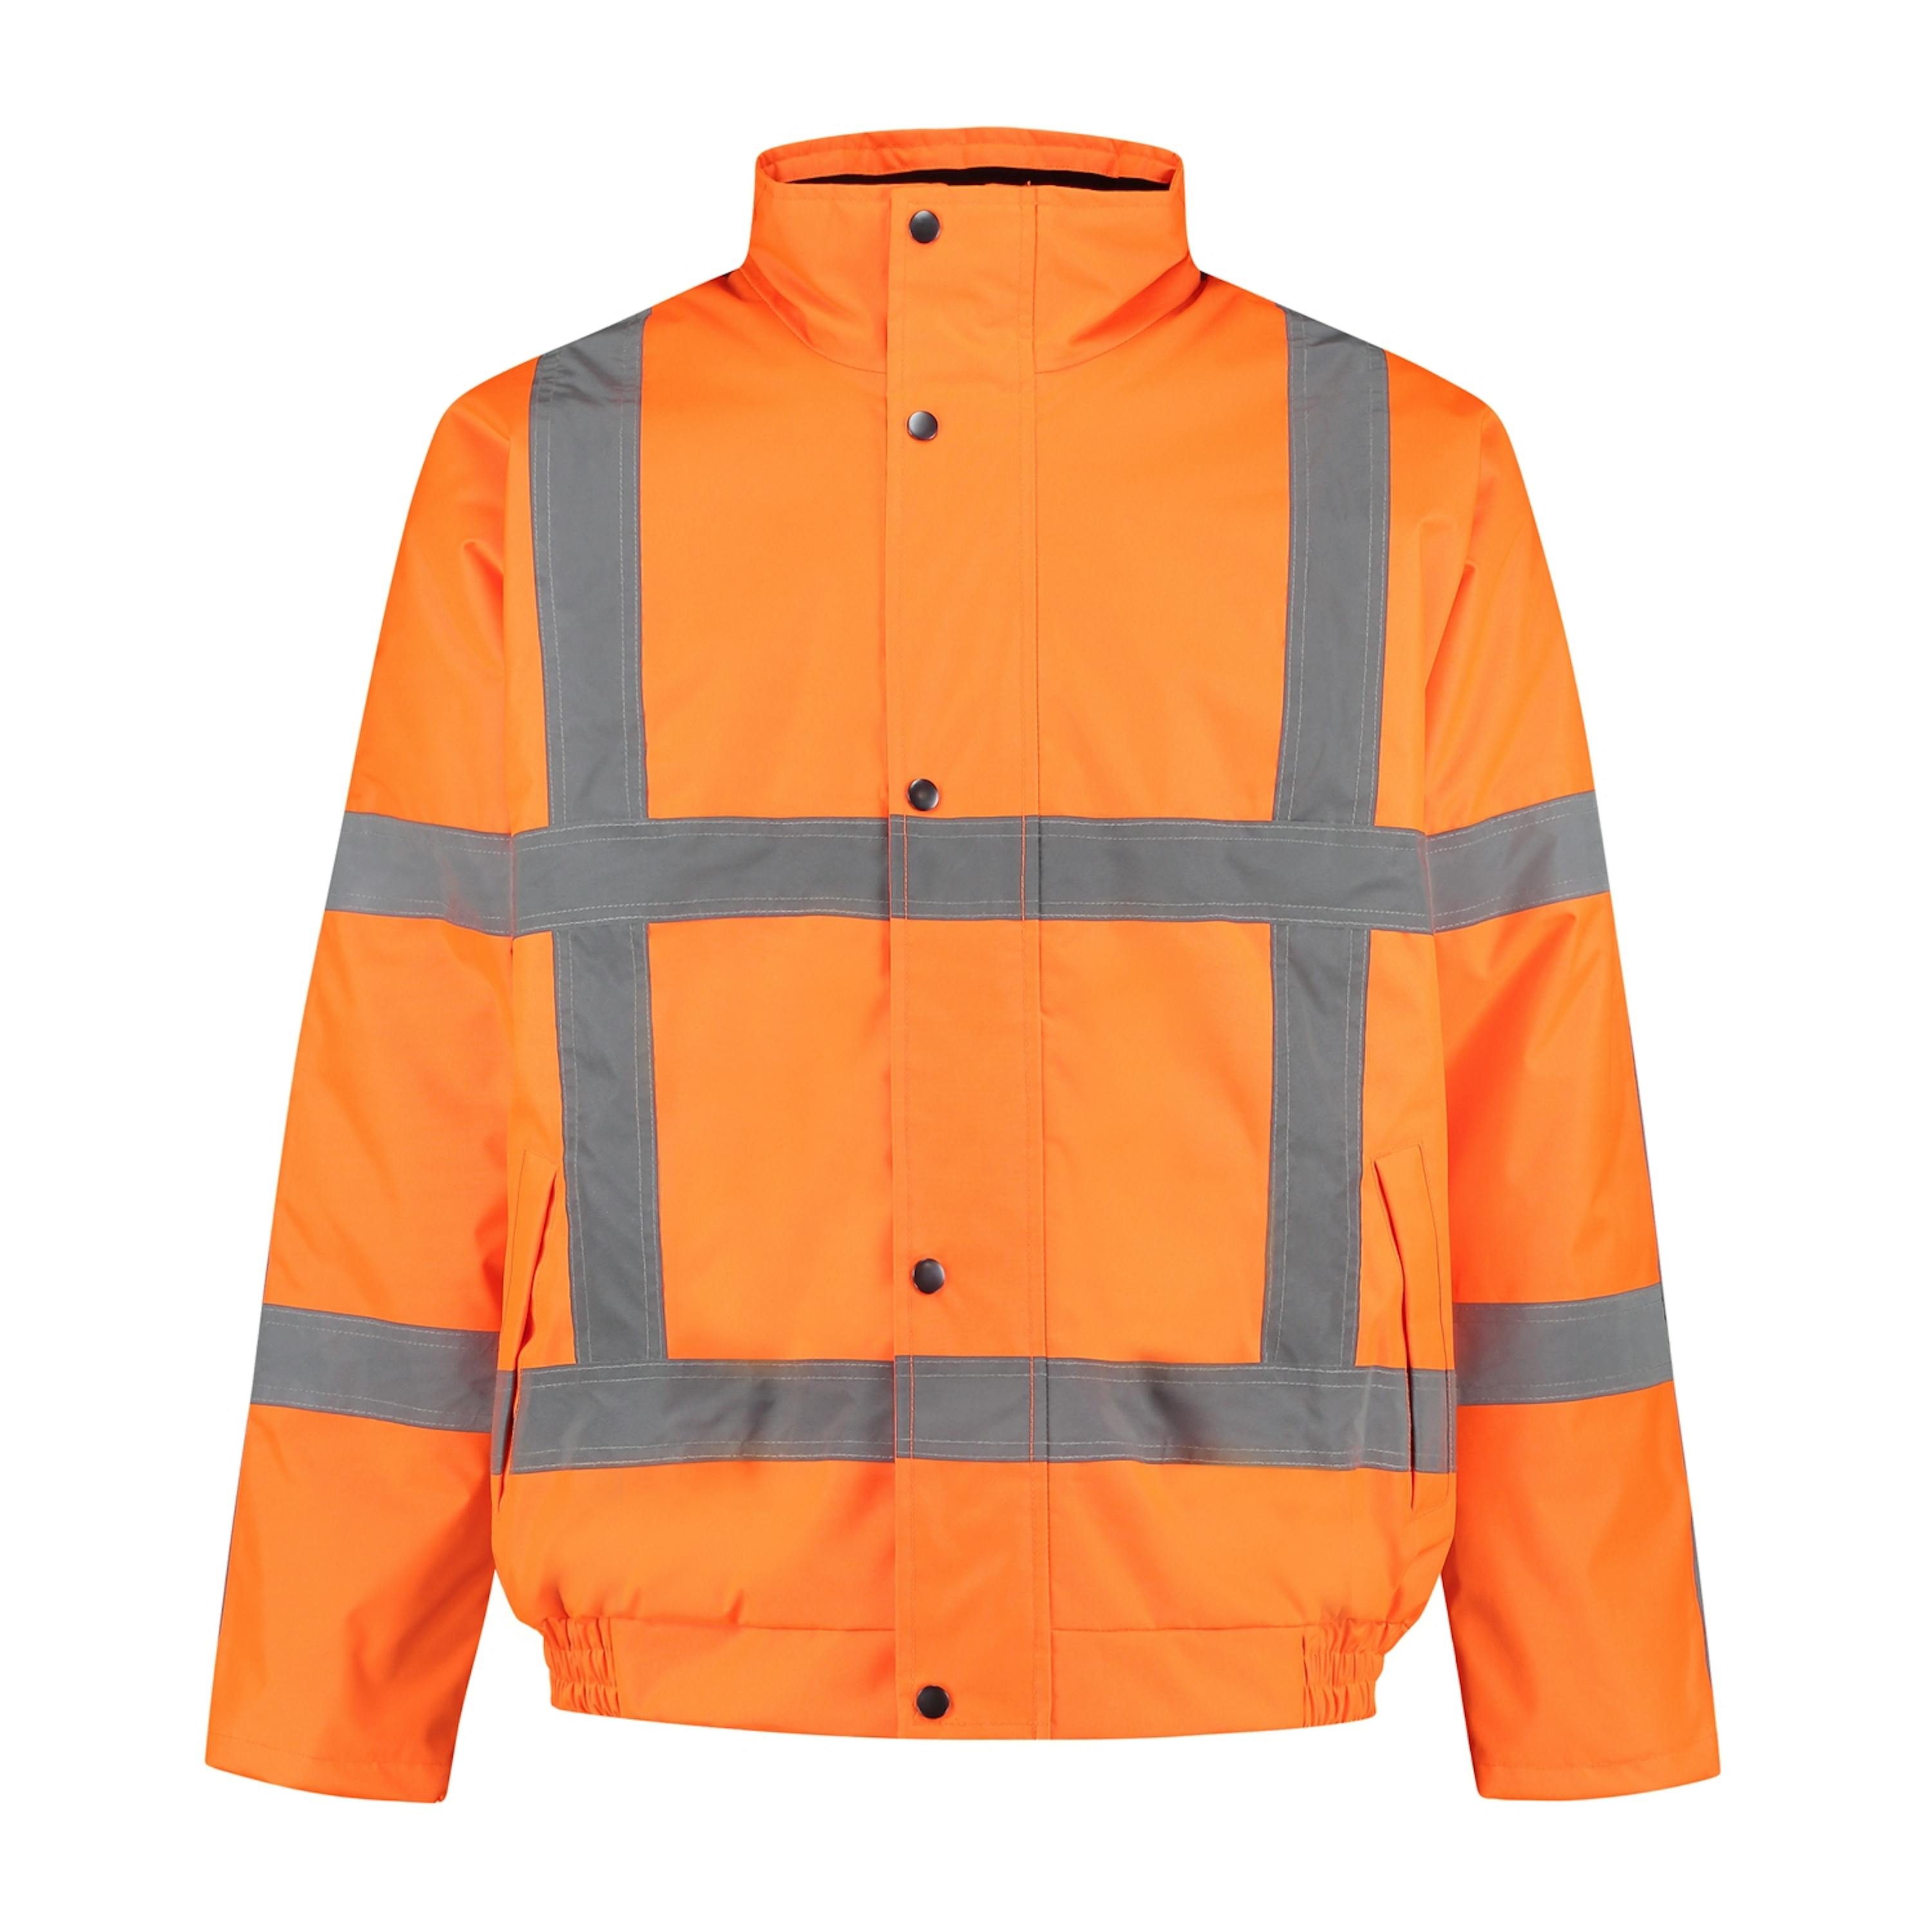 specificatie Leger hangen Oranje RWS kleding of Gele RWS kleding nodig? Ook voor borduren & bedrukken!